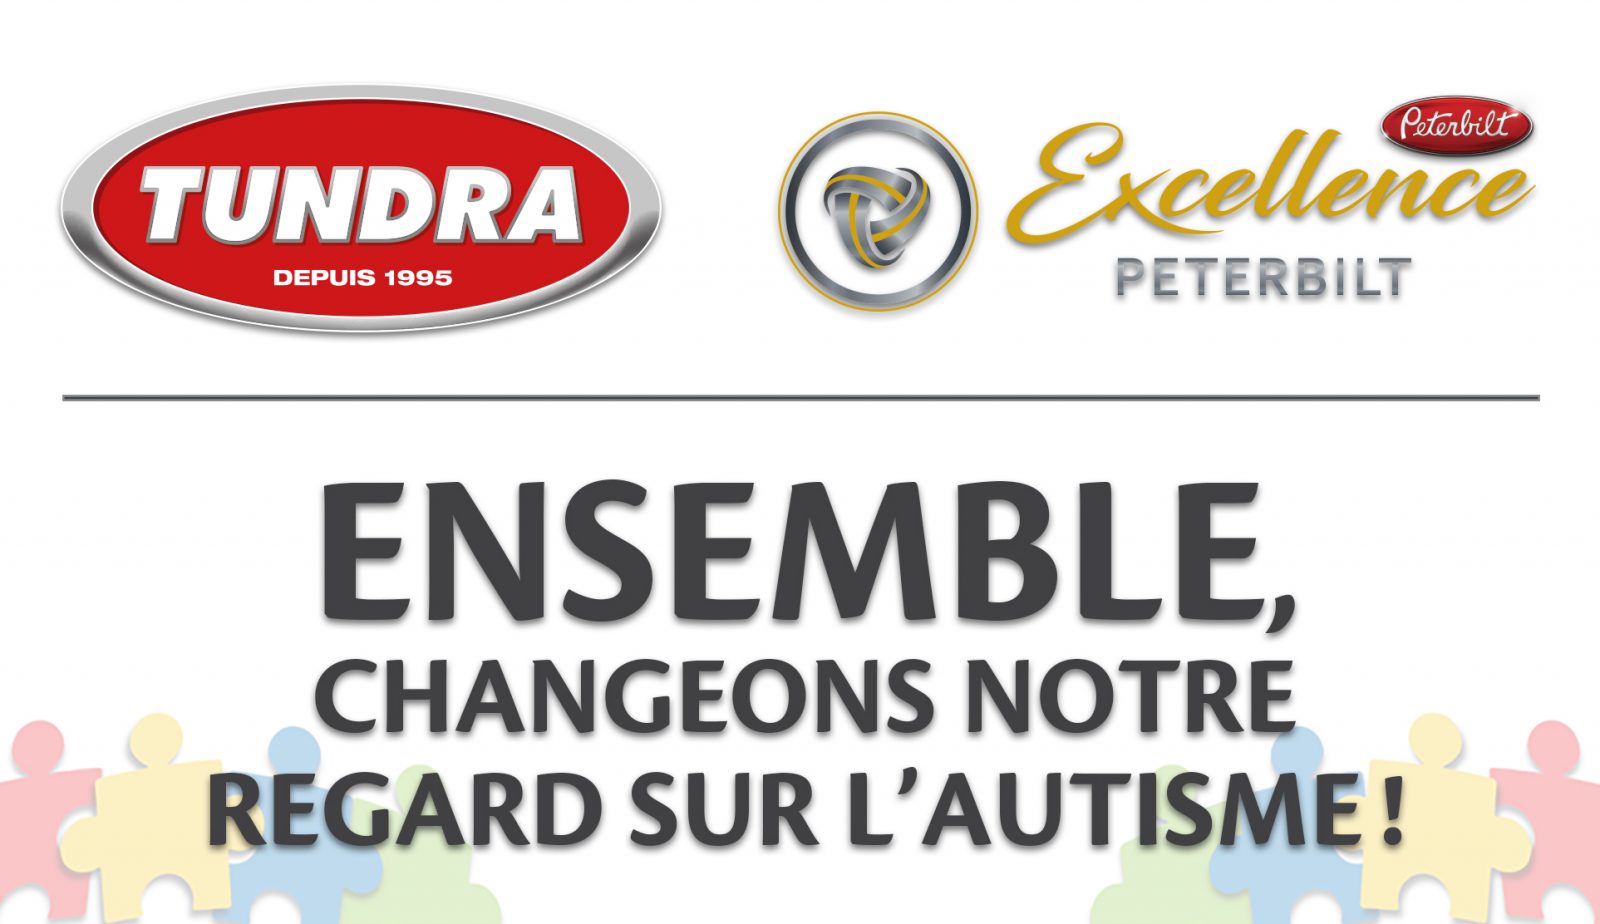 Excellence Peterbuilt et Tundra s’unisse pour l’autisme